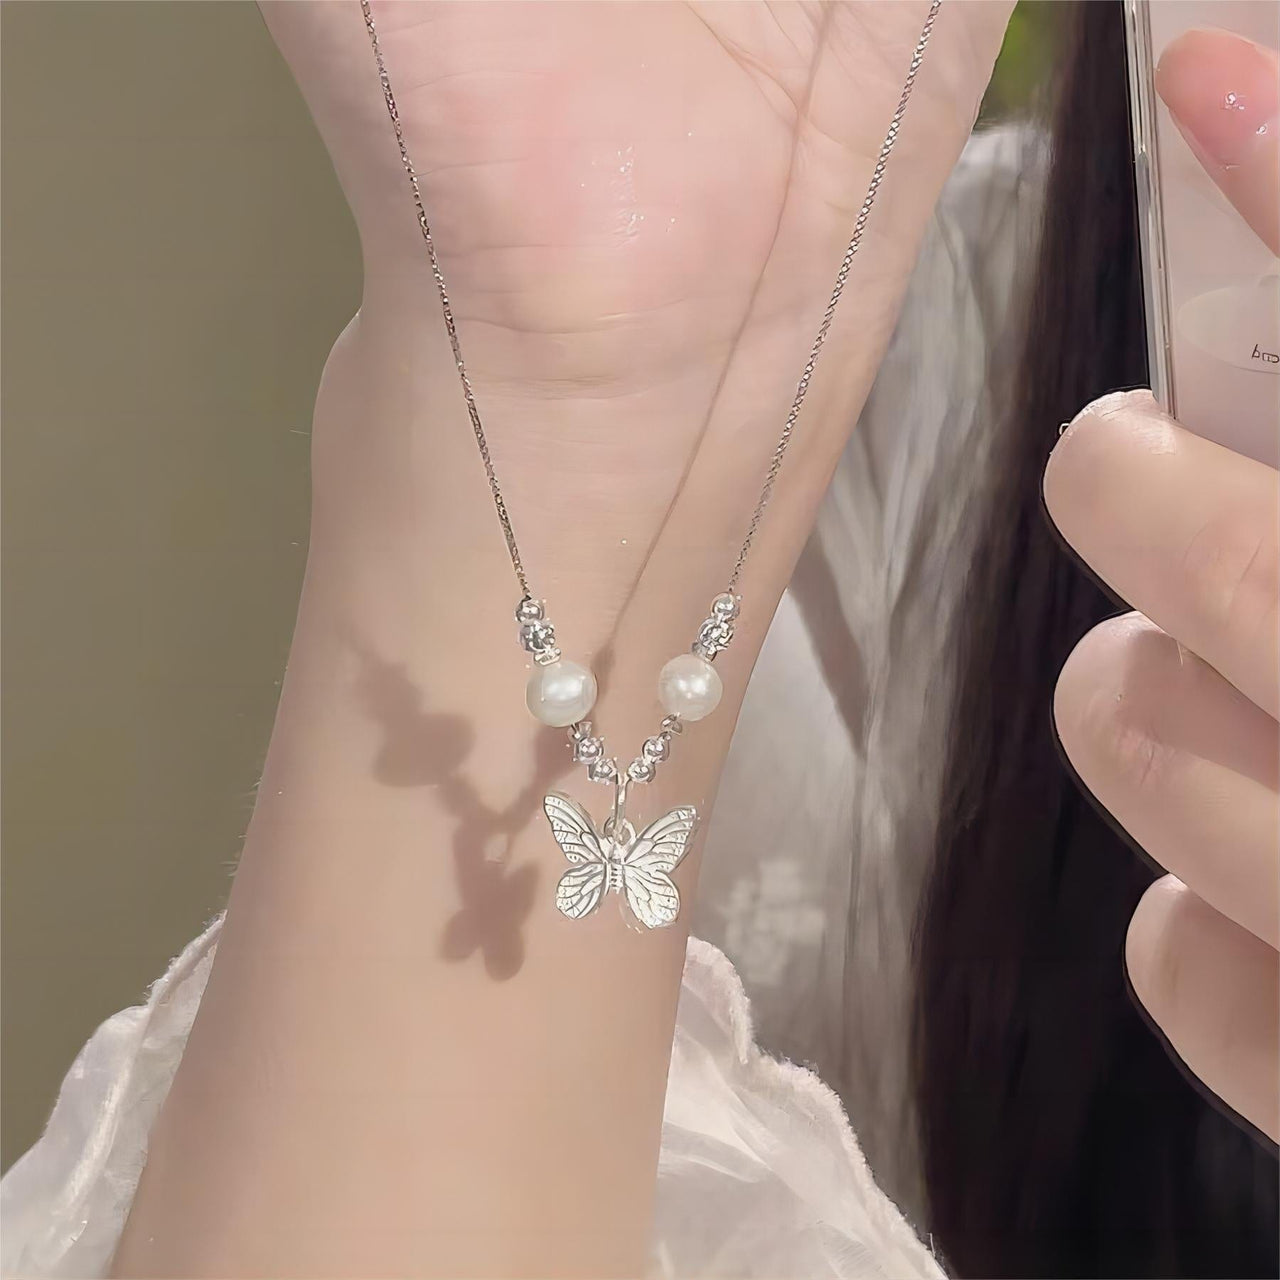 Dainty Silver Butterfly Necklace - ArtGalleryZen